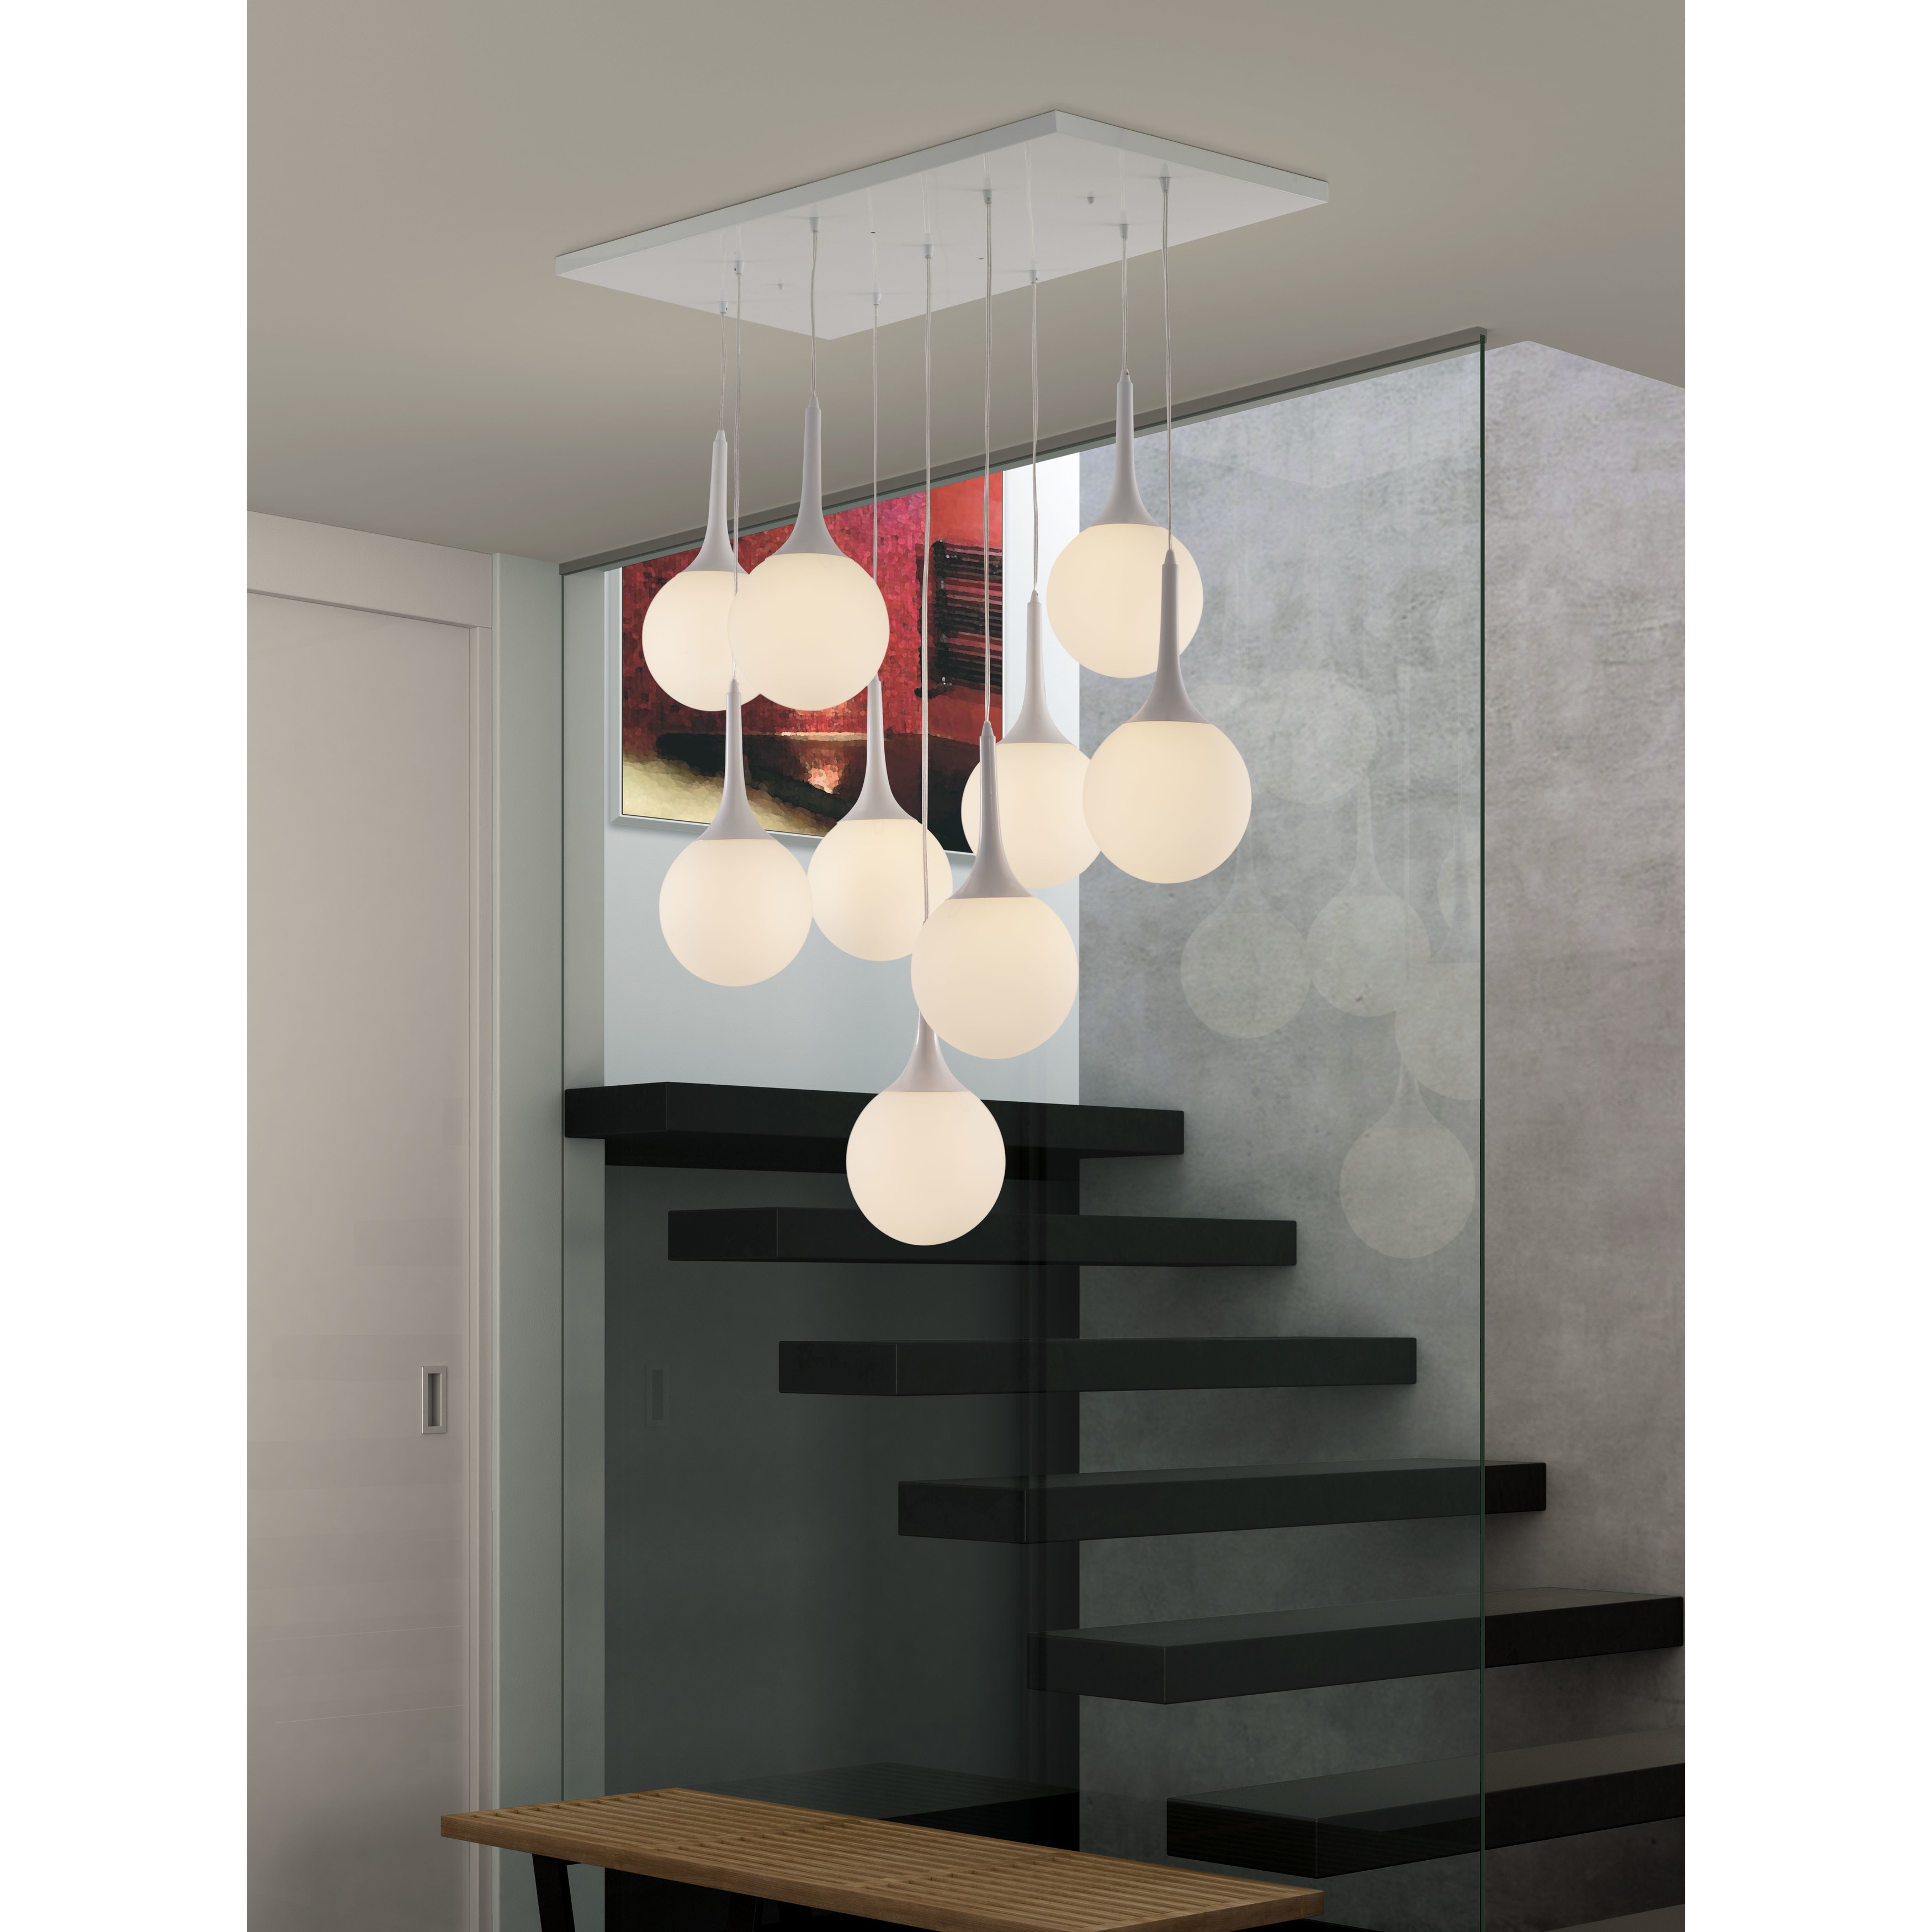 Zuo Modern Lighting & Ceiling Fans Buy Chandeliers